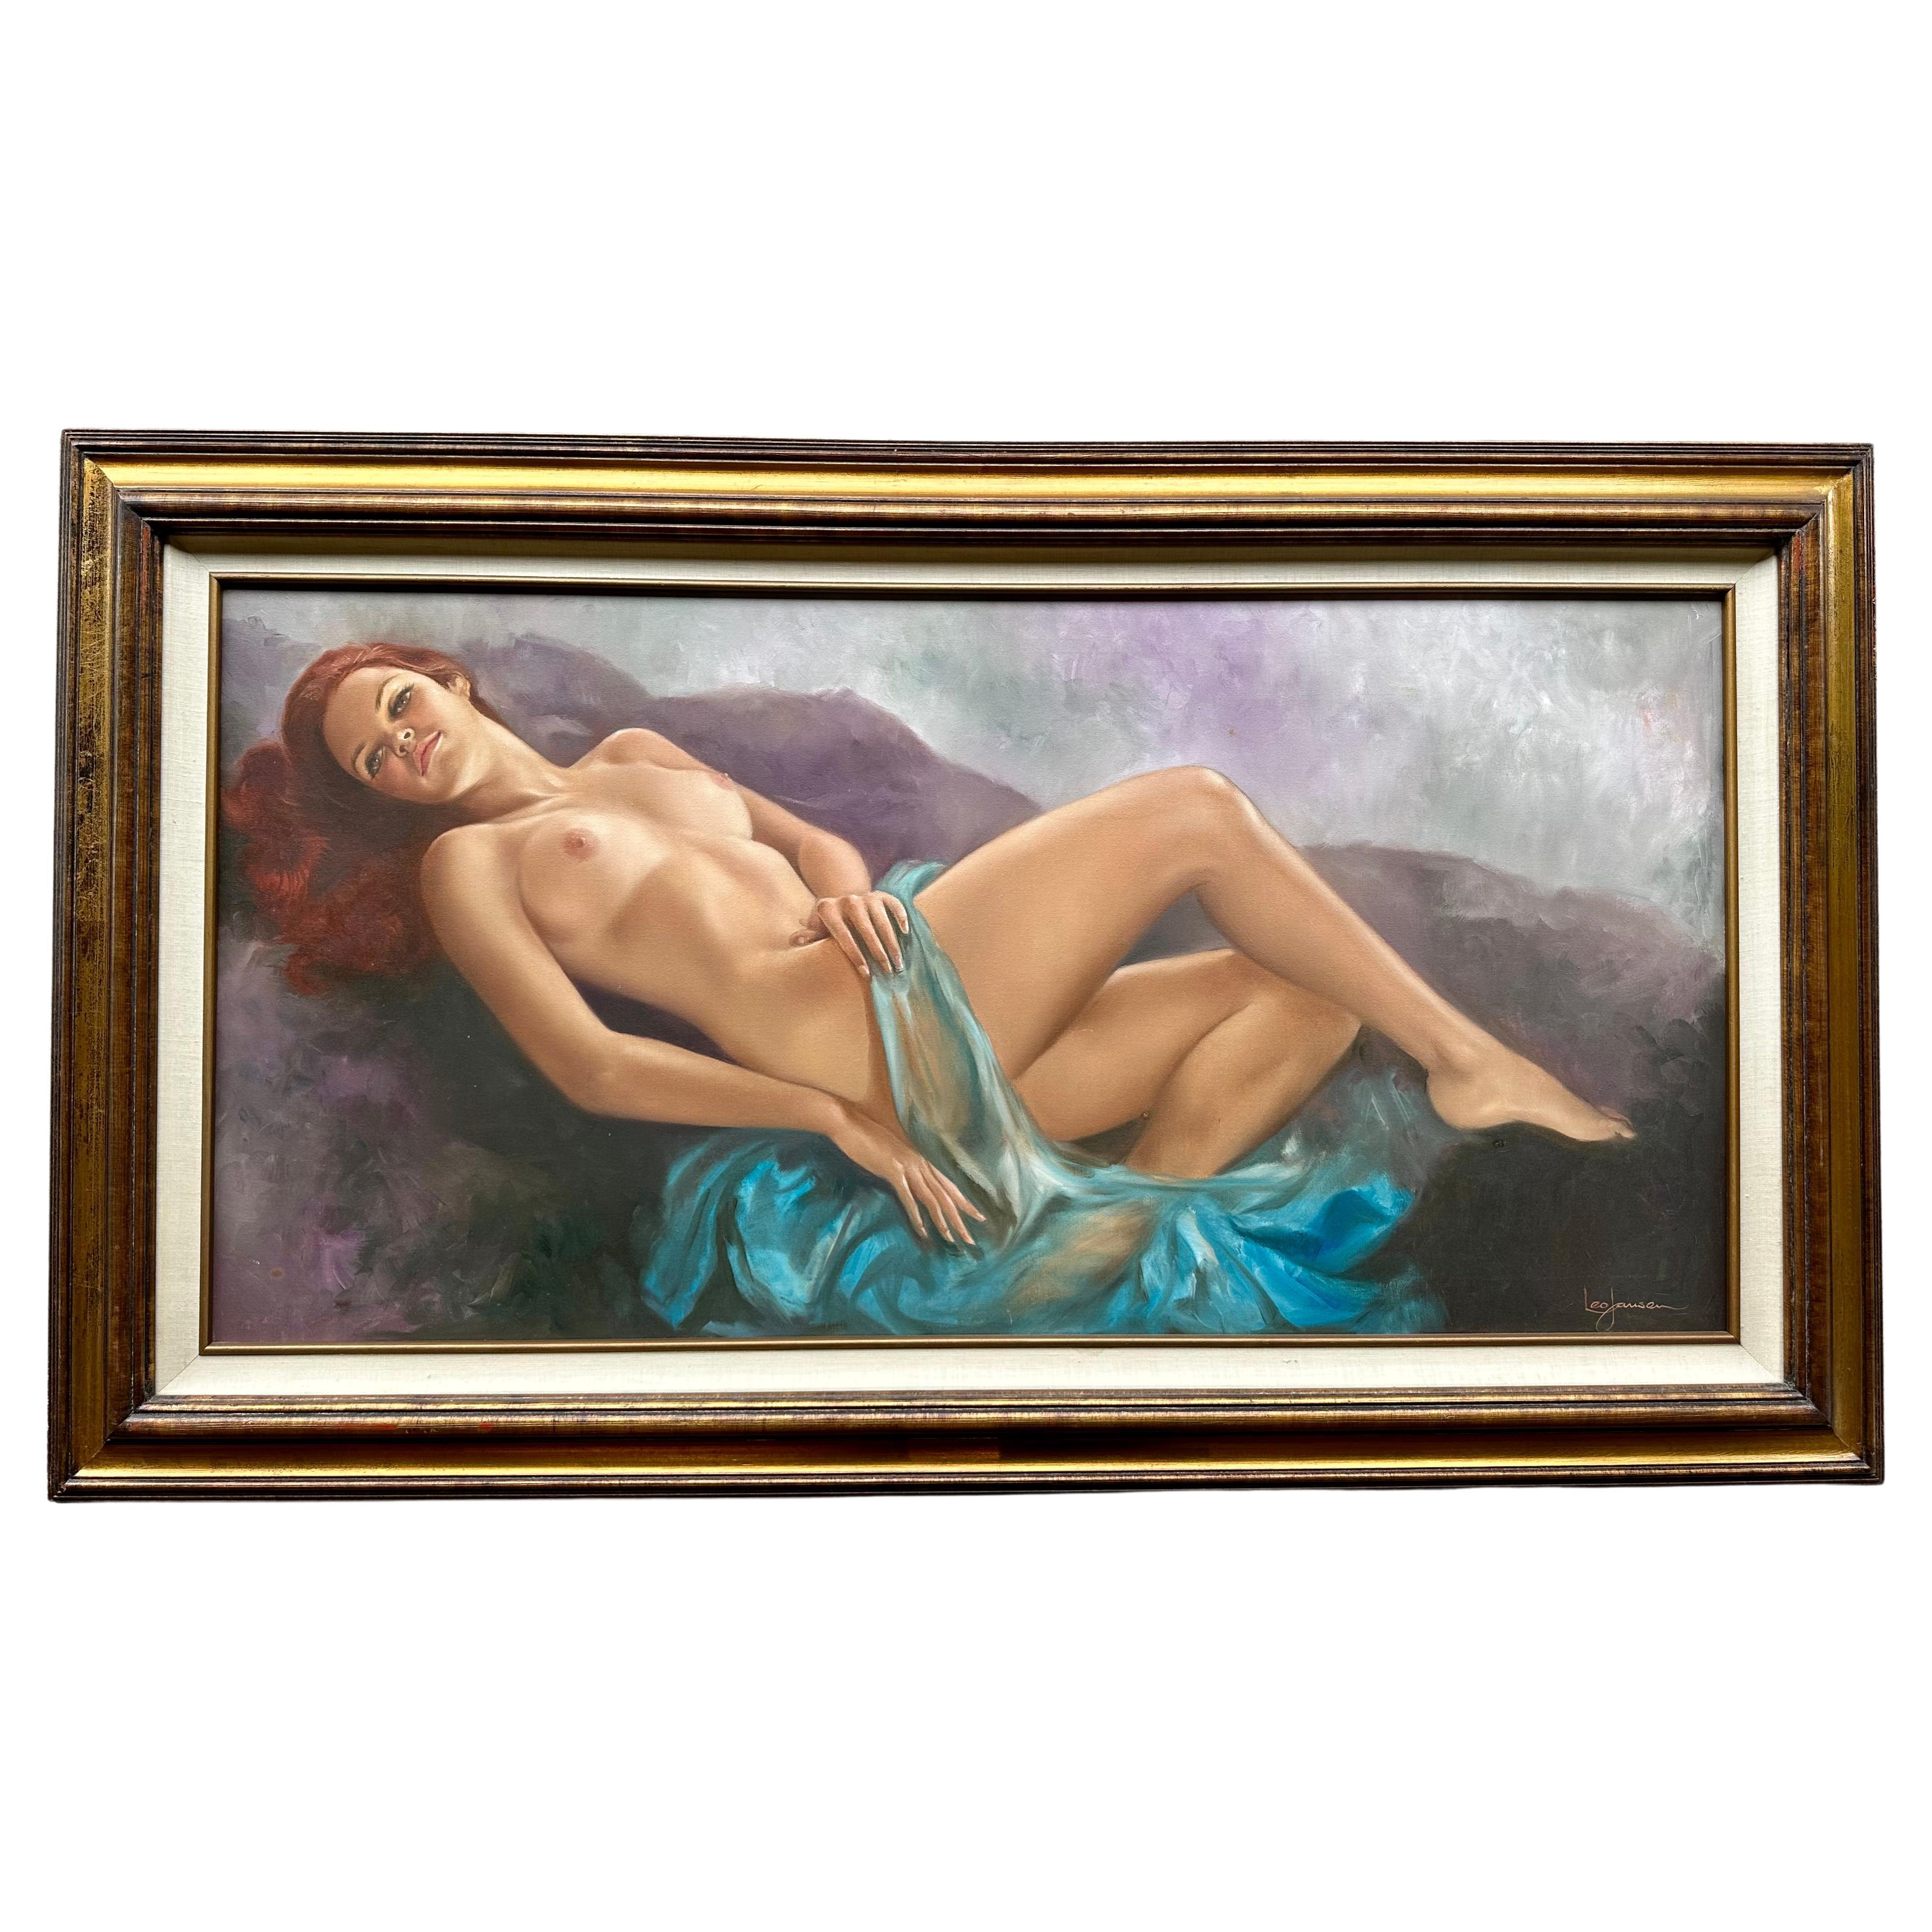 Très sensuelle, grande huile sur toile originale d'une belle femme nue allongée à la tête rouge, par le célèbre artiste néerlandais décédé, Leo Jansen (1930-1980). L'arrière-plan vaporeux, semblable à un nuage, dans des tons de violet, de sarcelle